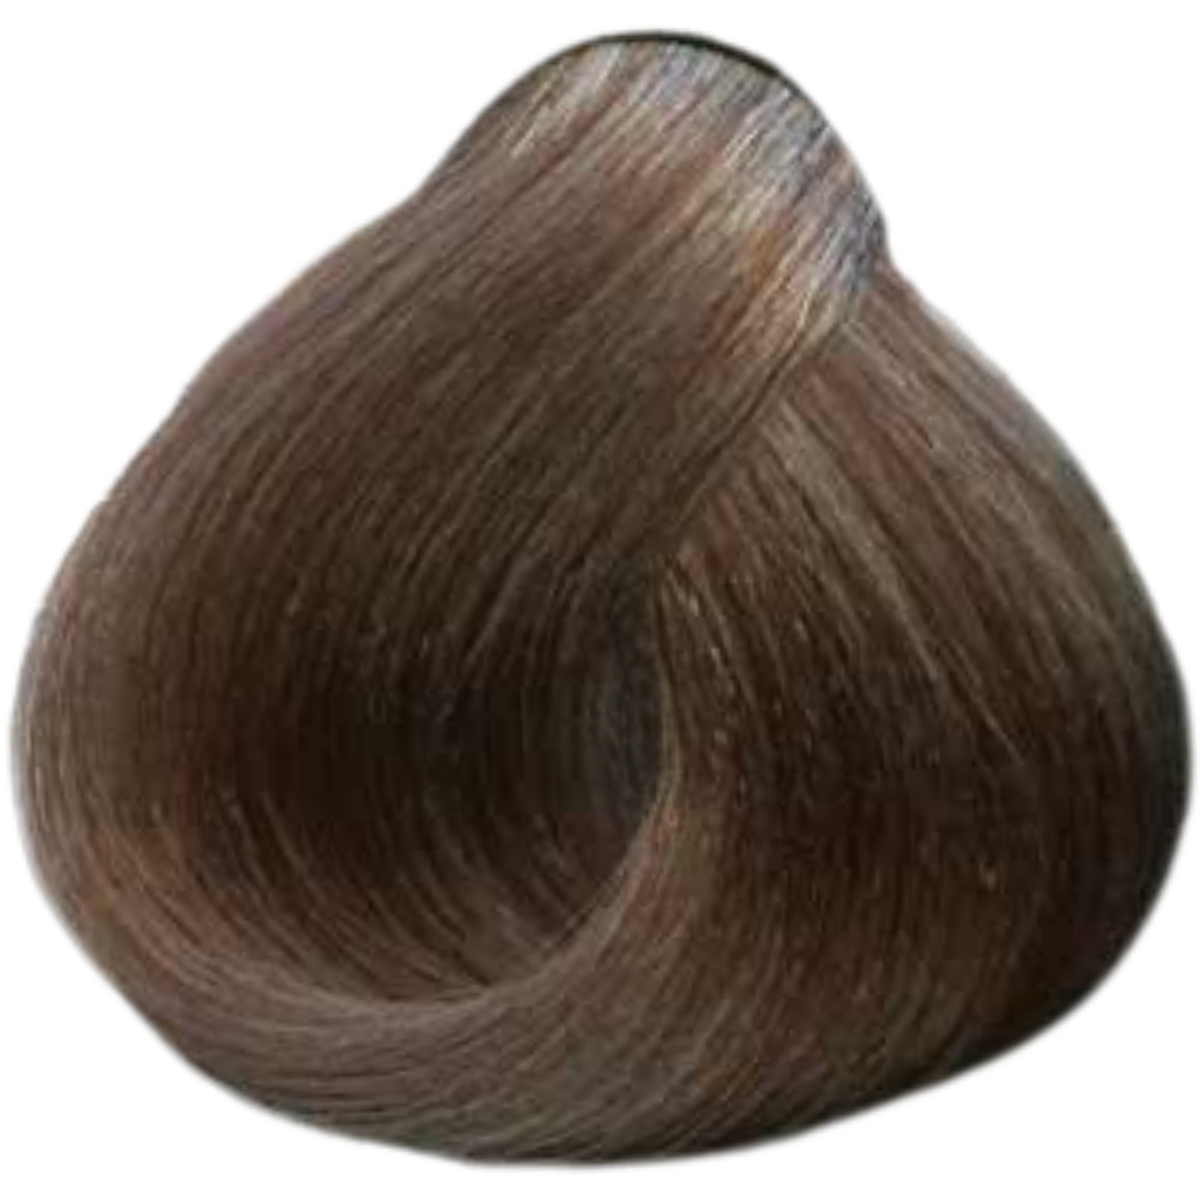 צבע שיער 9.72 VERY LIGHT BROWN IRIDESCENT BLONDE פארמויטה FarmaVita צבע לשיער 100 גרם